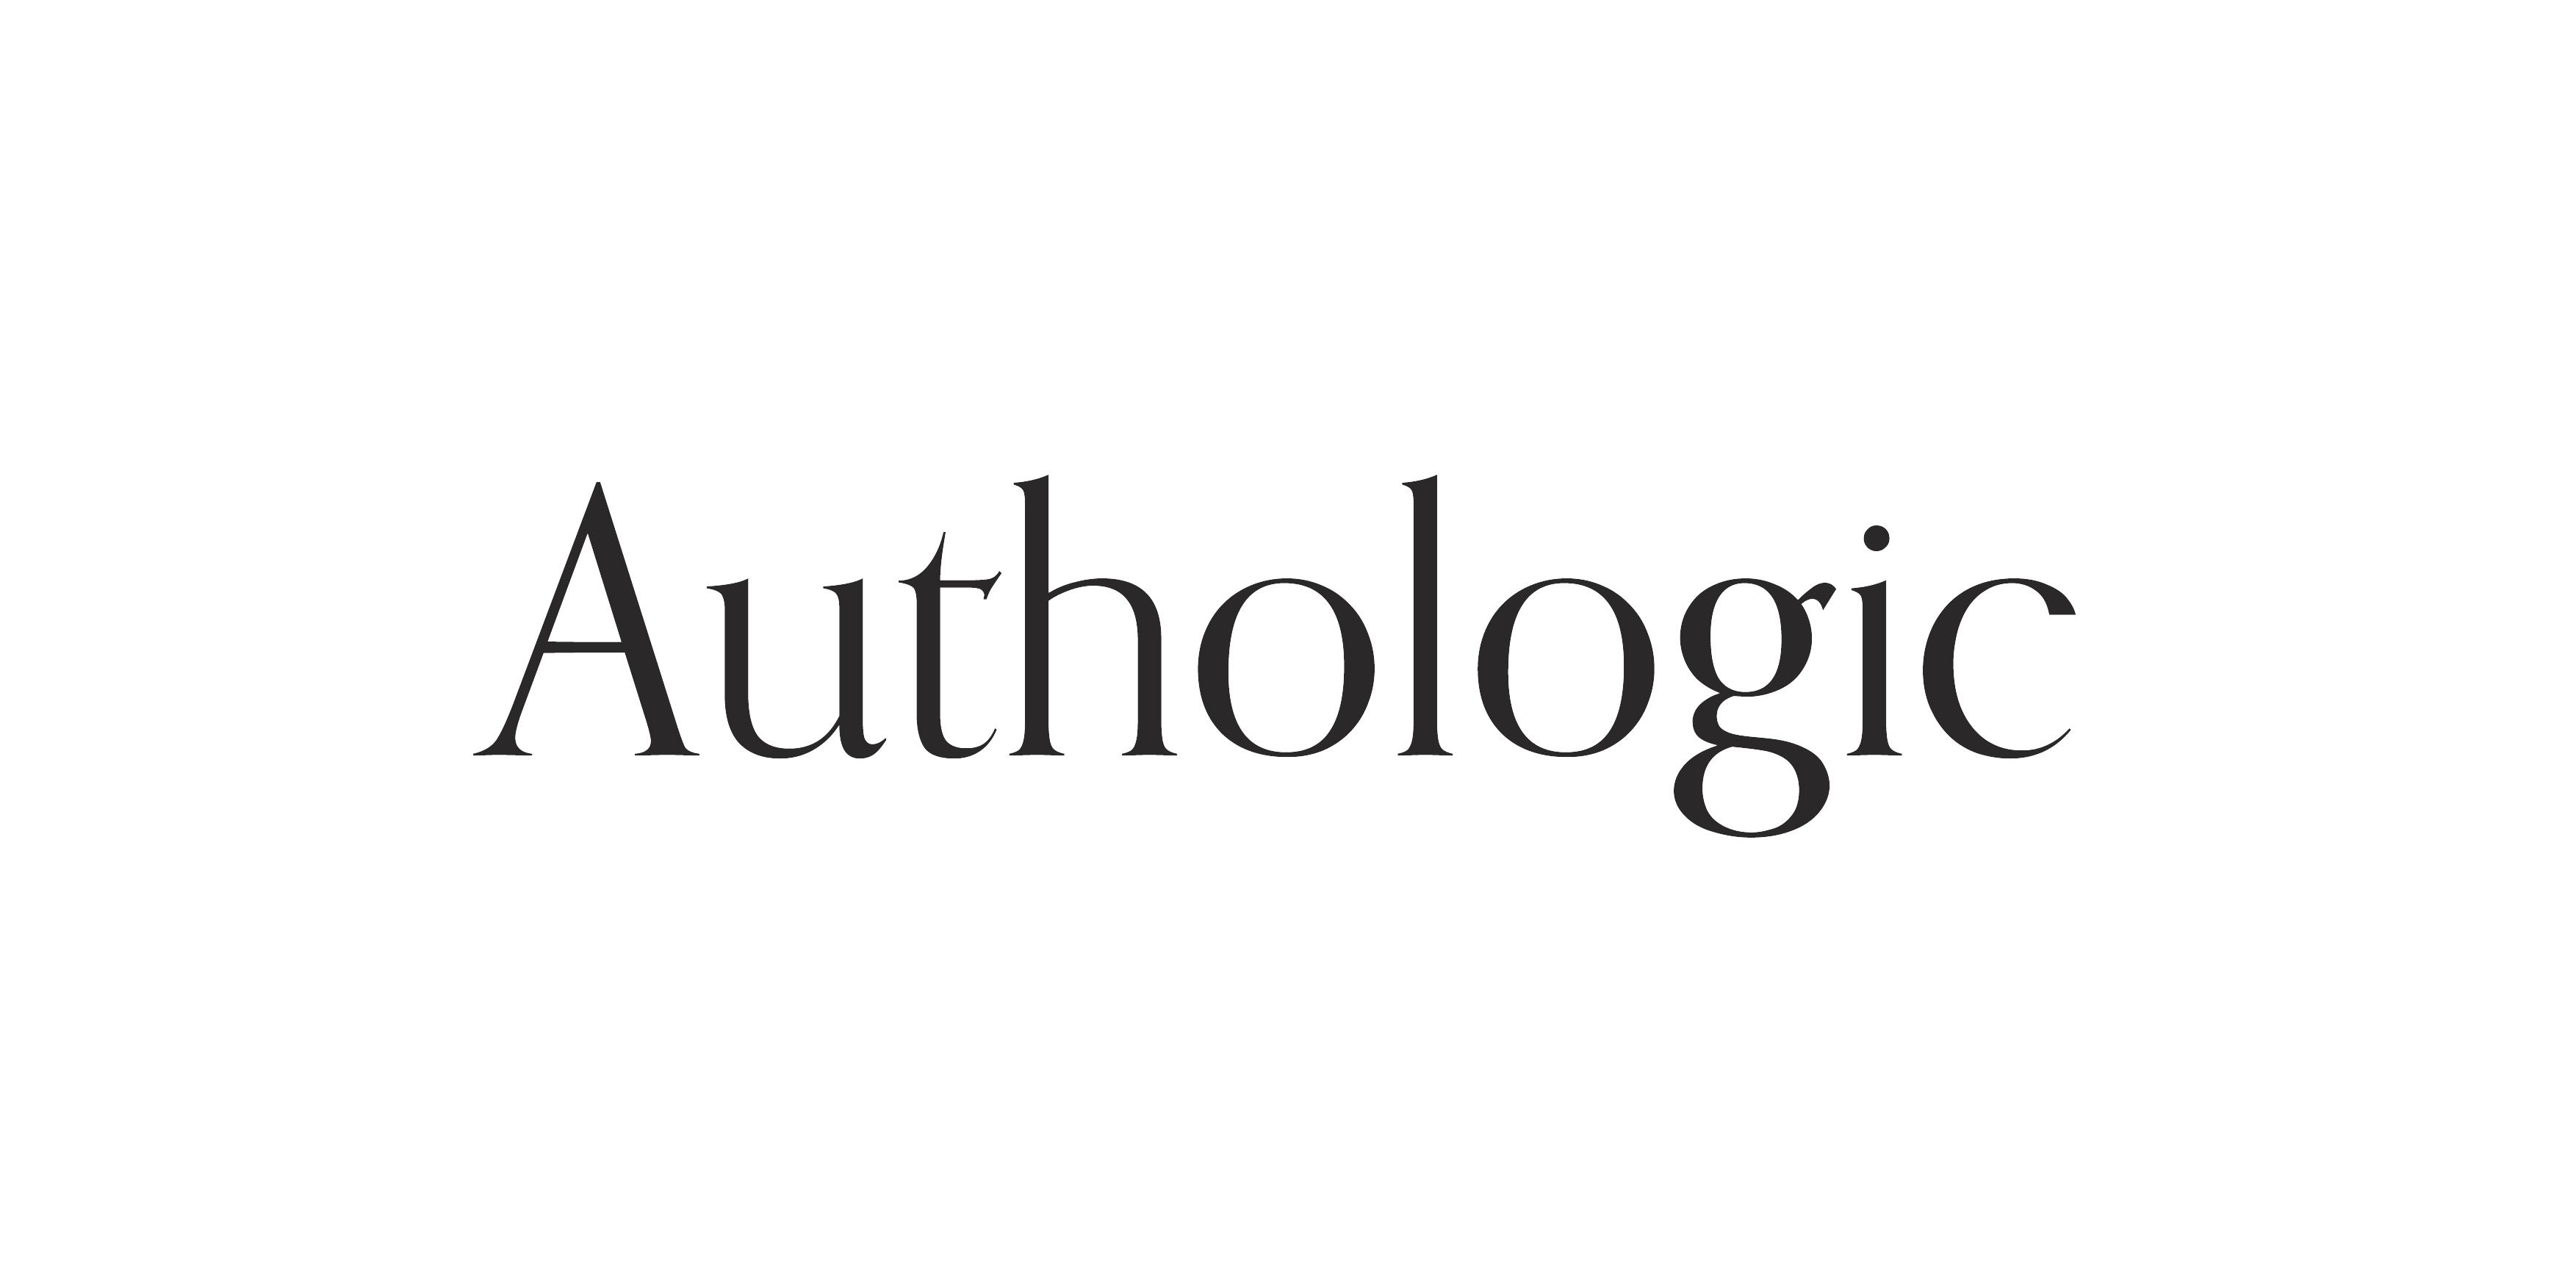 Authologic news